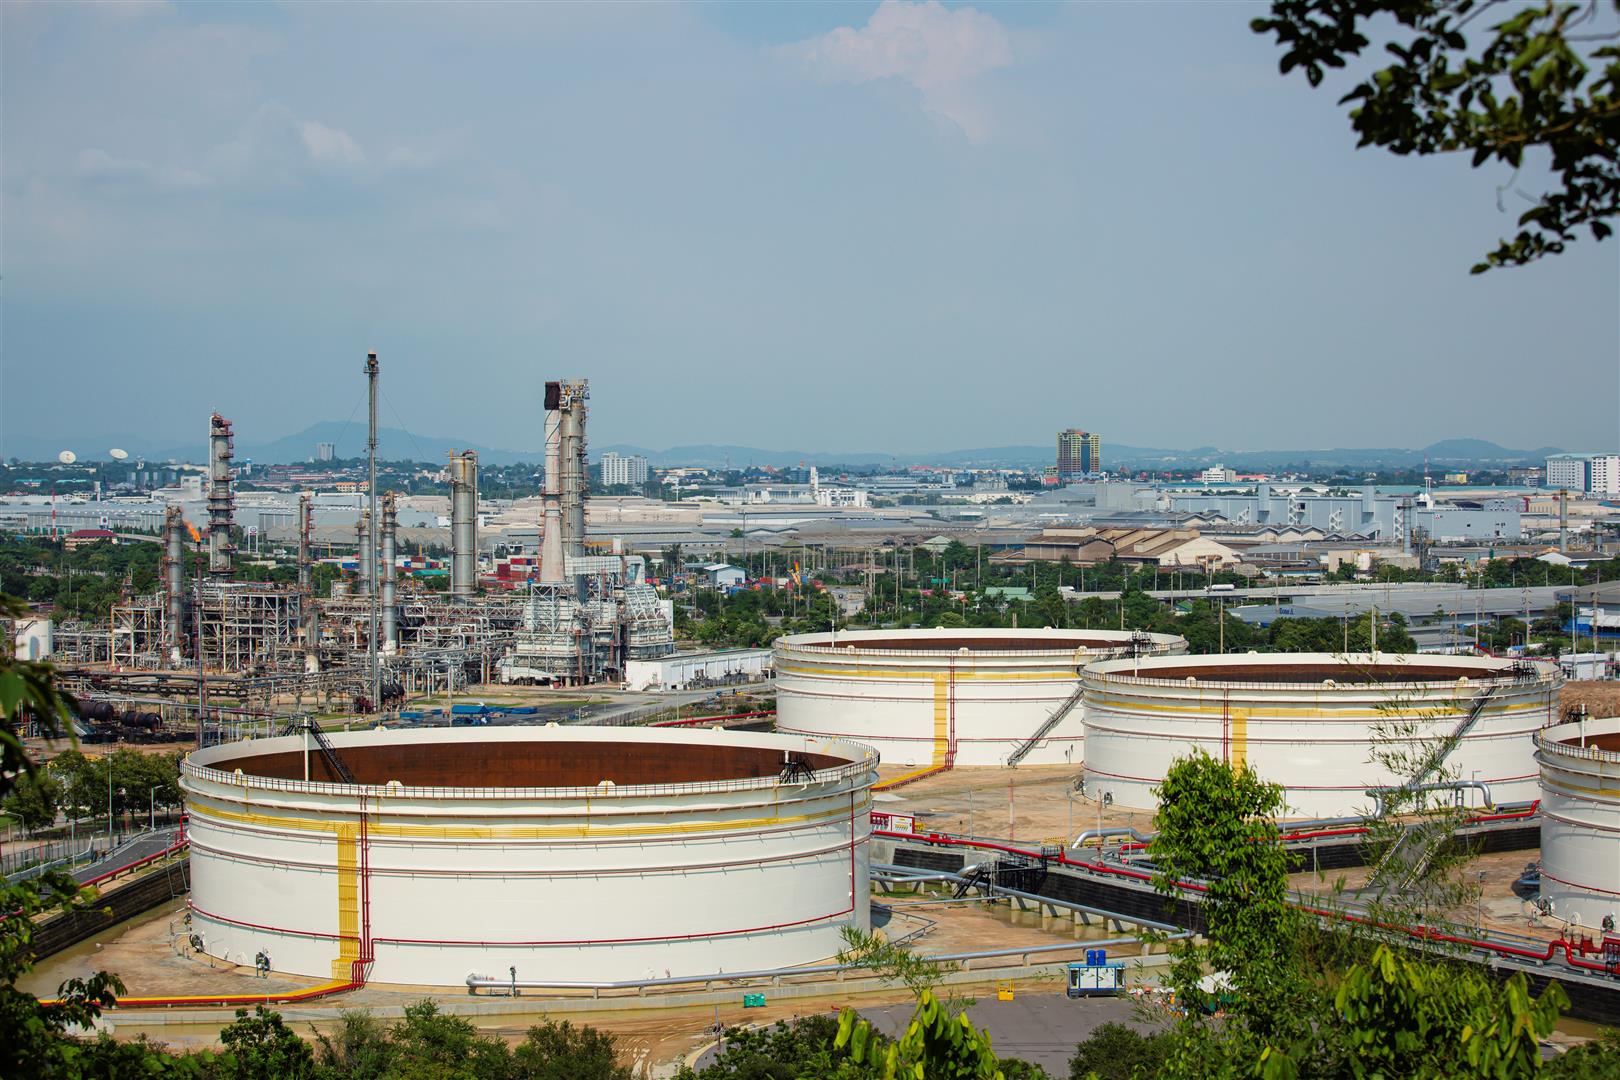 tank-crude-oil-scene-refinery-plant-tower-column-petrochemistry-industry.jpg